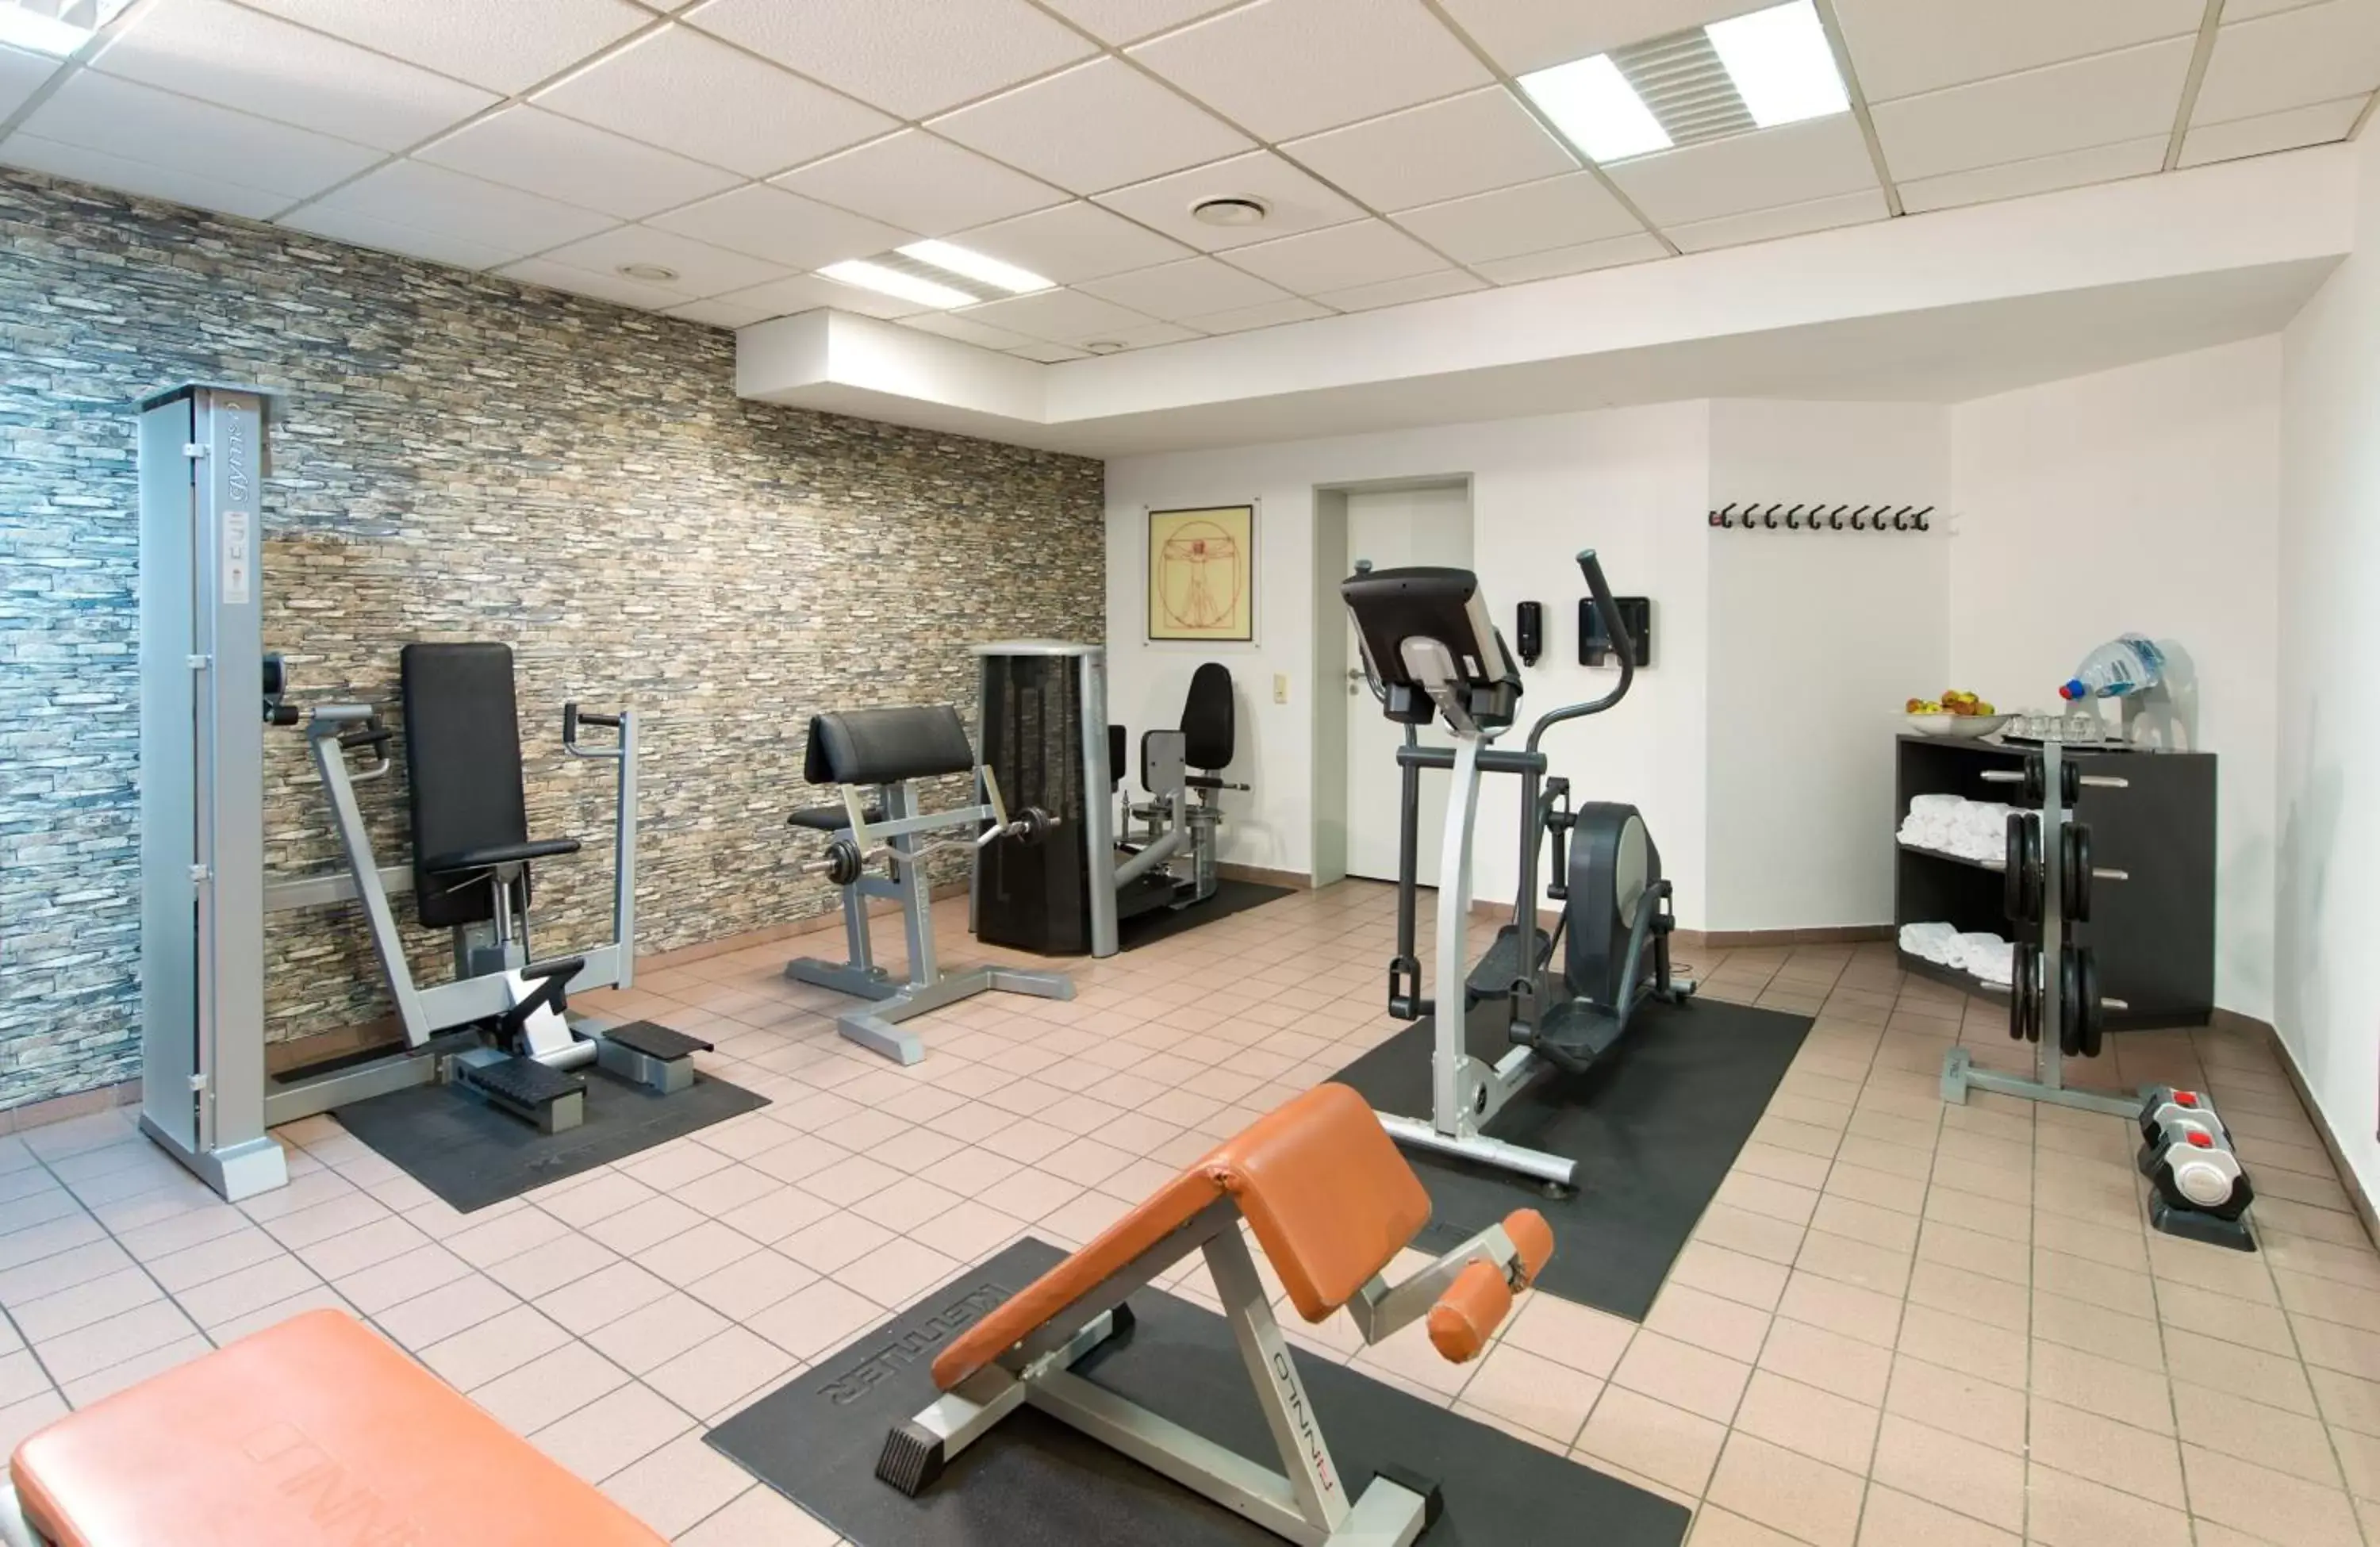 Fitness centre/facilities, Fitness Center/Facilities in Leonardo Hotel Köln